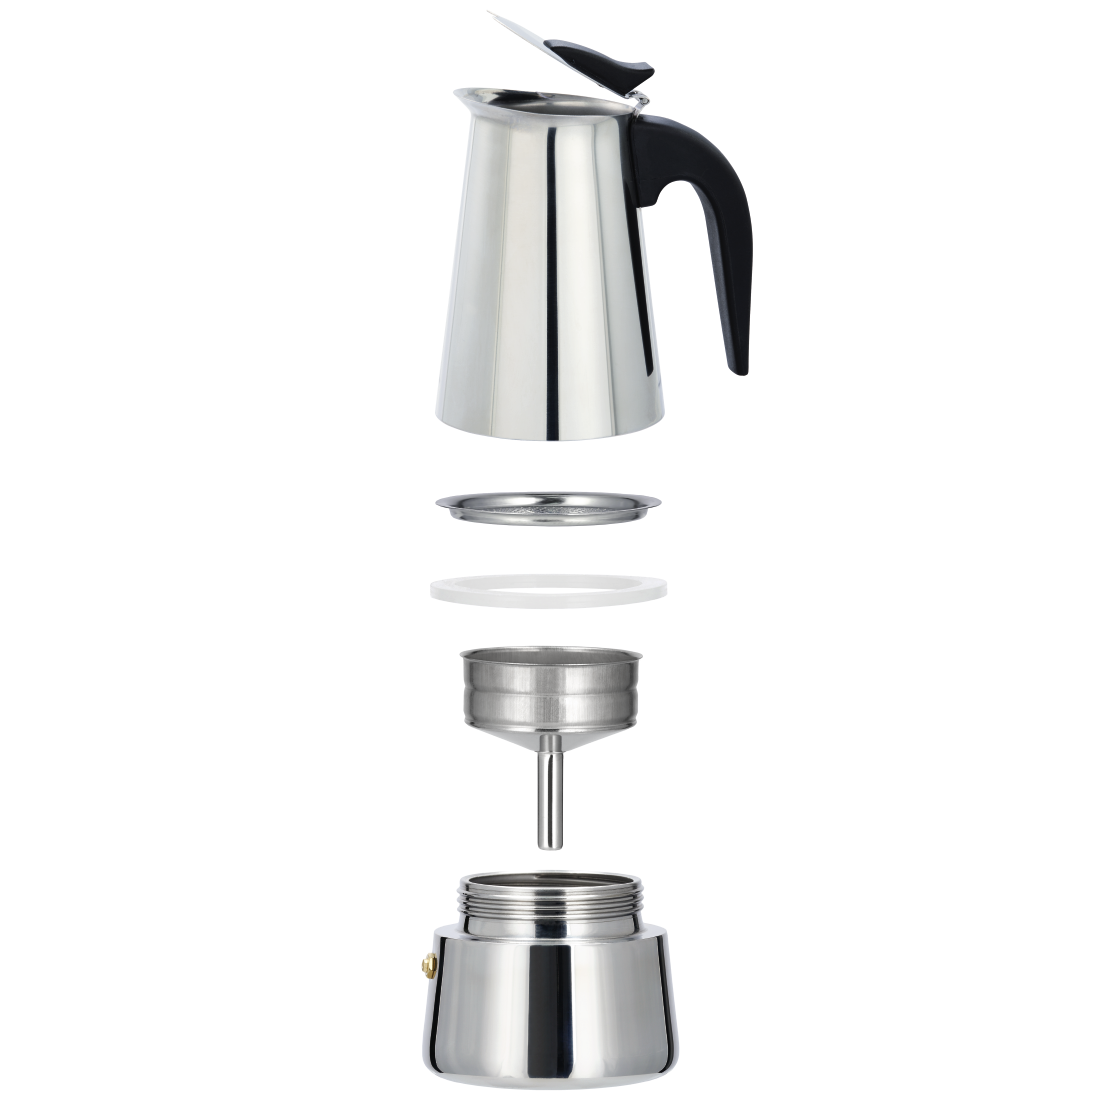 abx2 Druckfähige Abbildung 2 - Xavax, Espressokocher aus Edelstahl, 250 ml, geeignet für Induktion